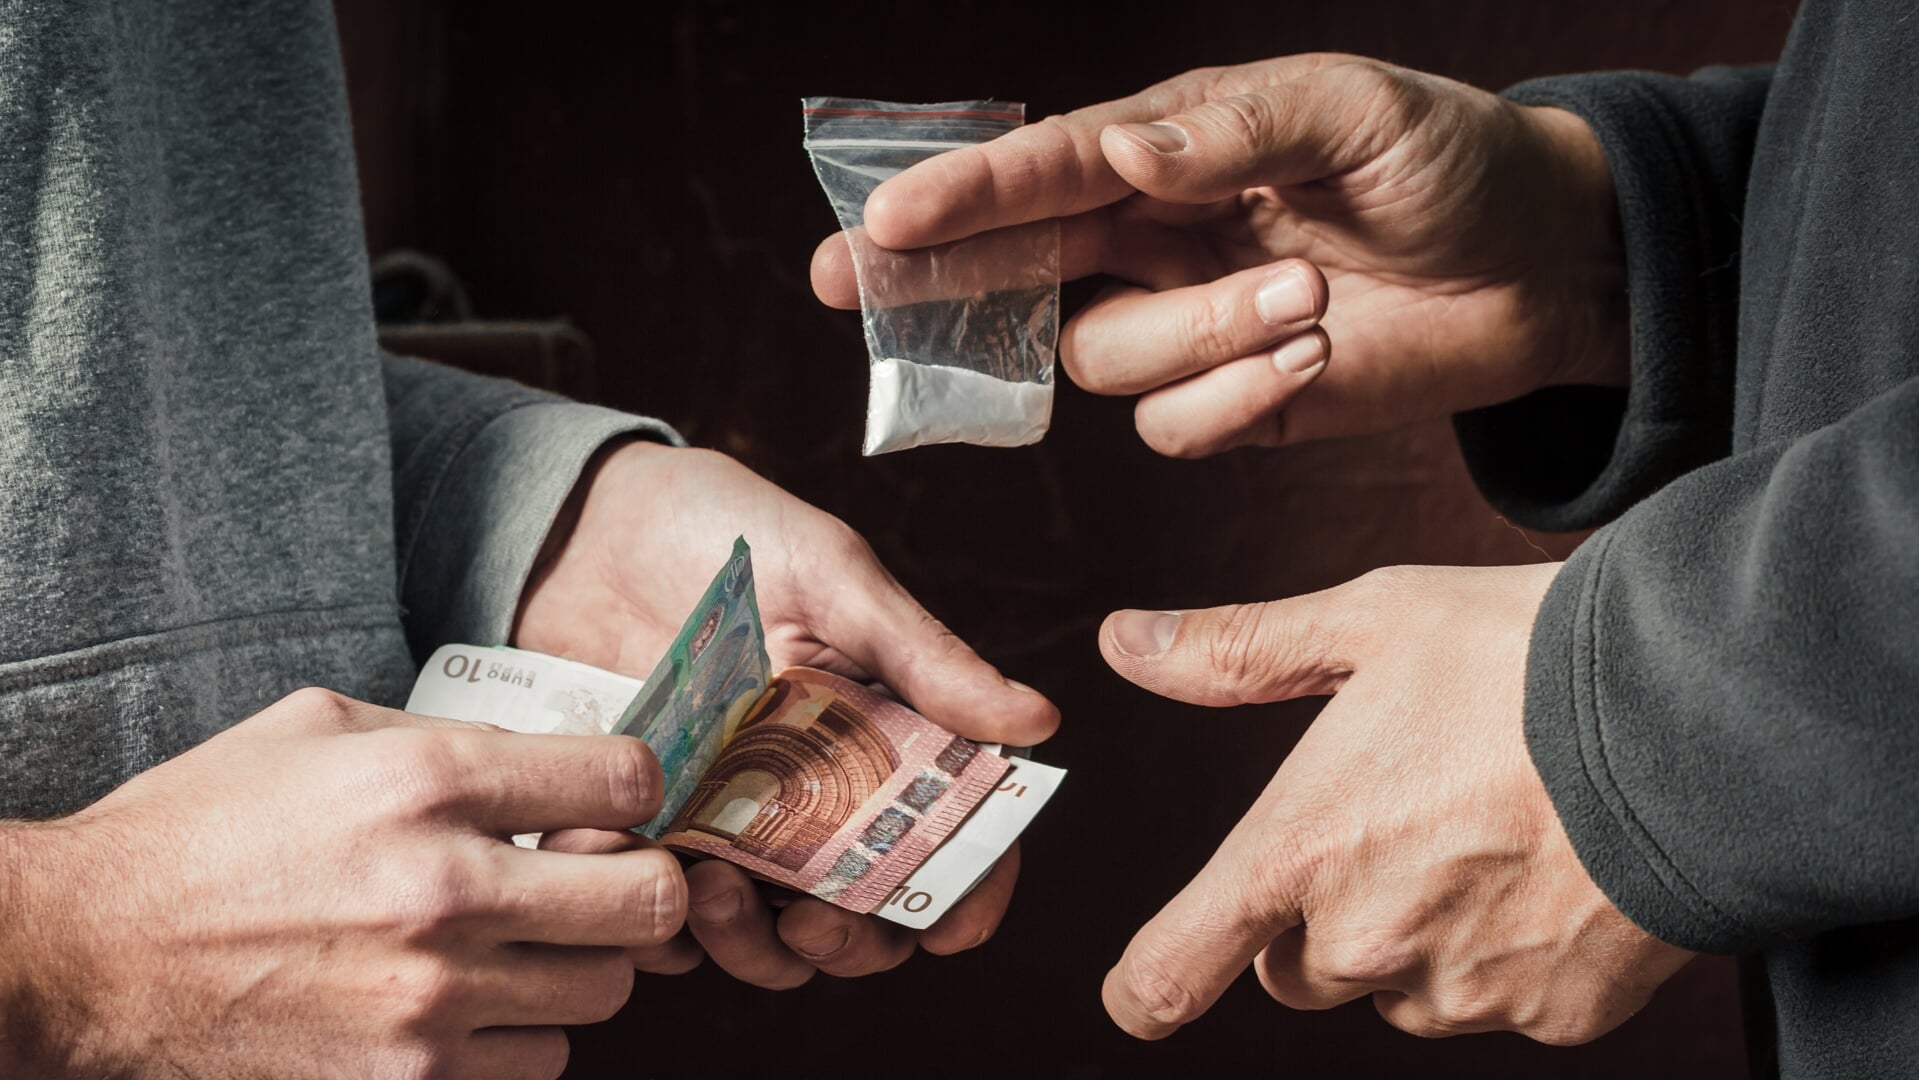 Het drugsteam richt zich met name op het verdienmodel in de ondermijning, zoals de handel in verdovende middelen. (Foto: Shutterstock)